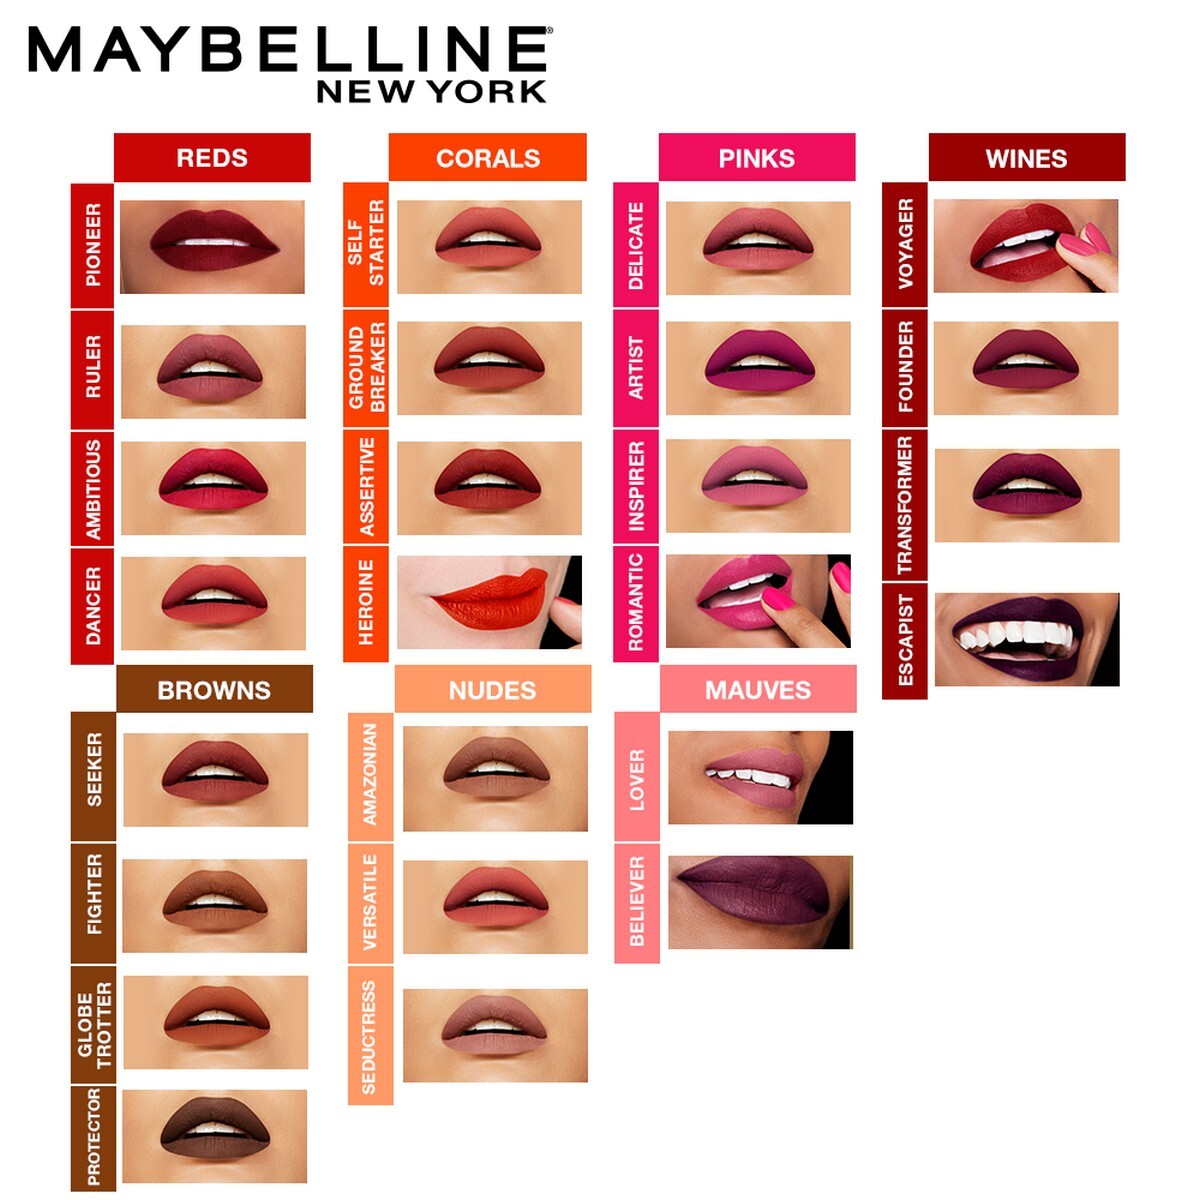 Maybelline New York Super Stay Matte Ink Liquid Lipstick, 118 Dancer, 5g